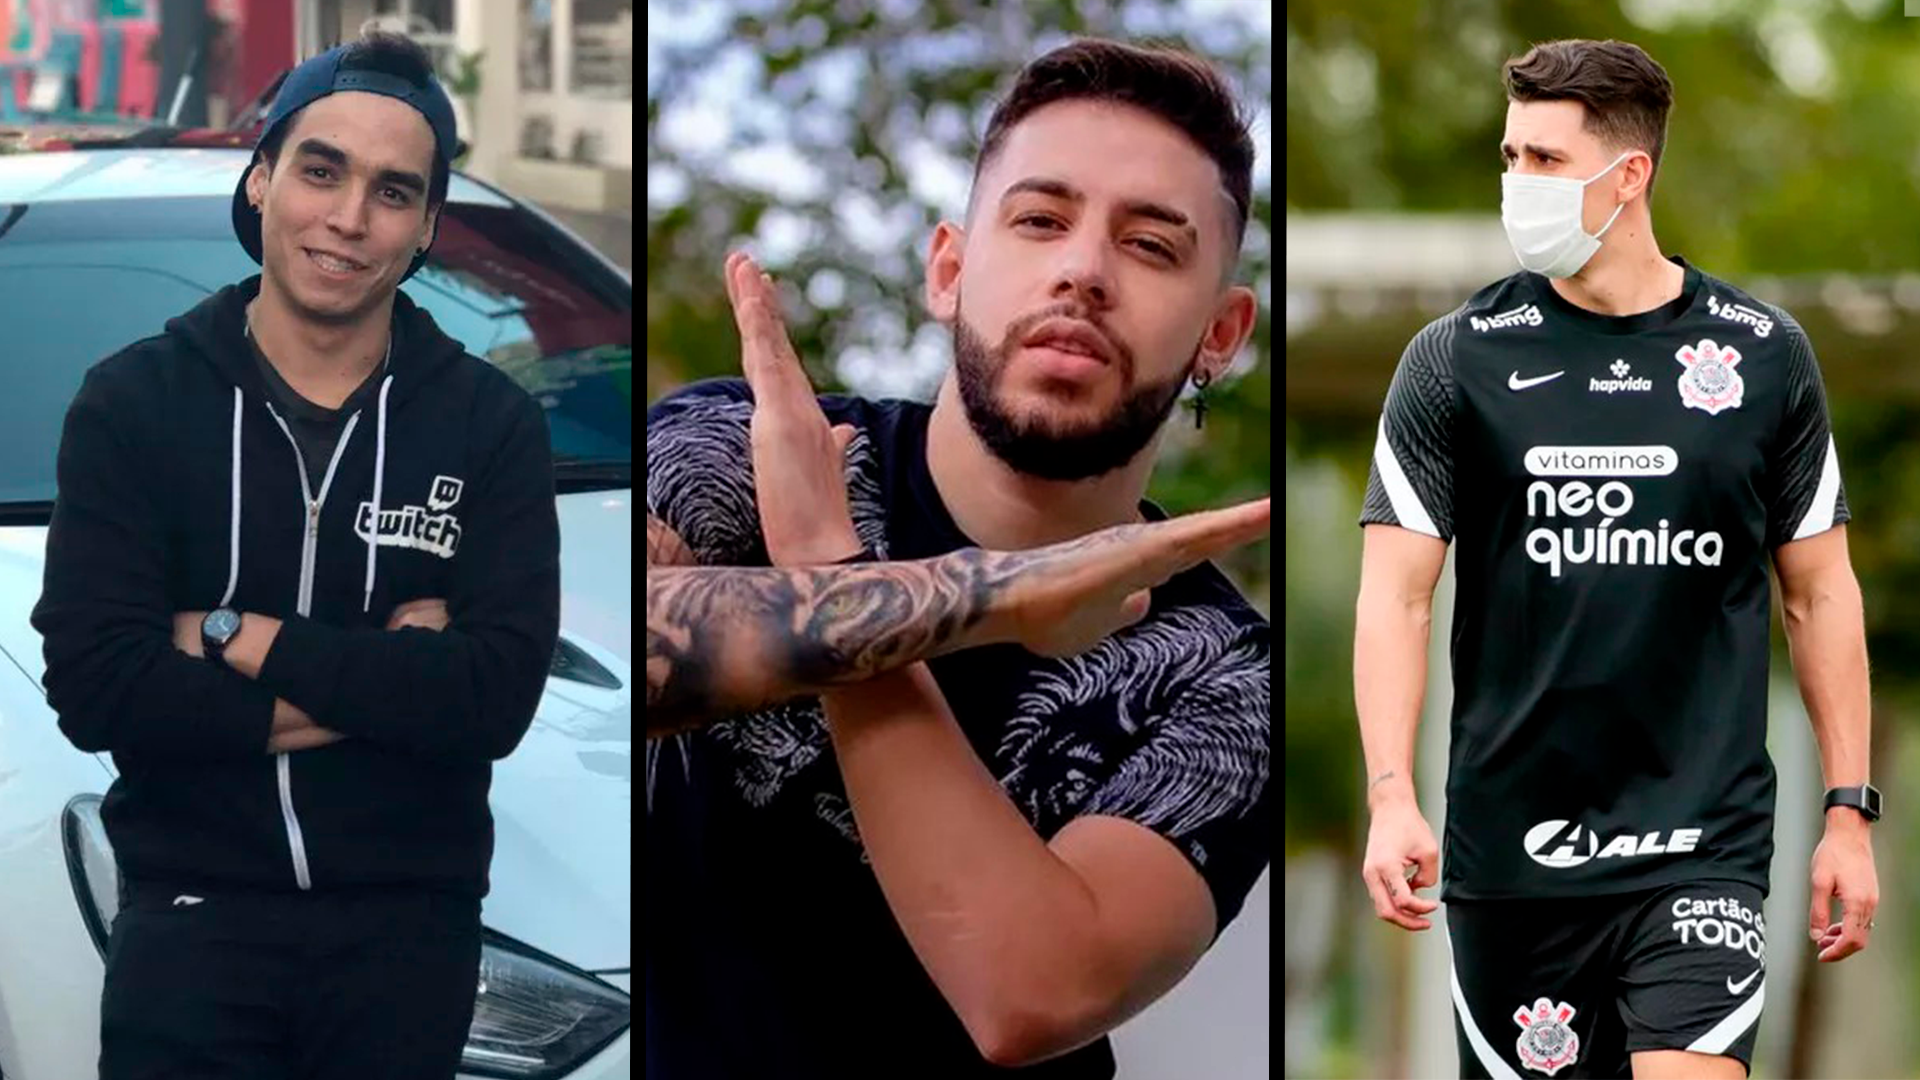 Entrevista BRTT, ROBO e FLANALISTA - Flamengo eSports 